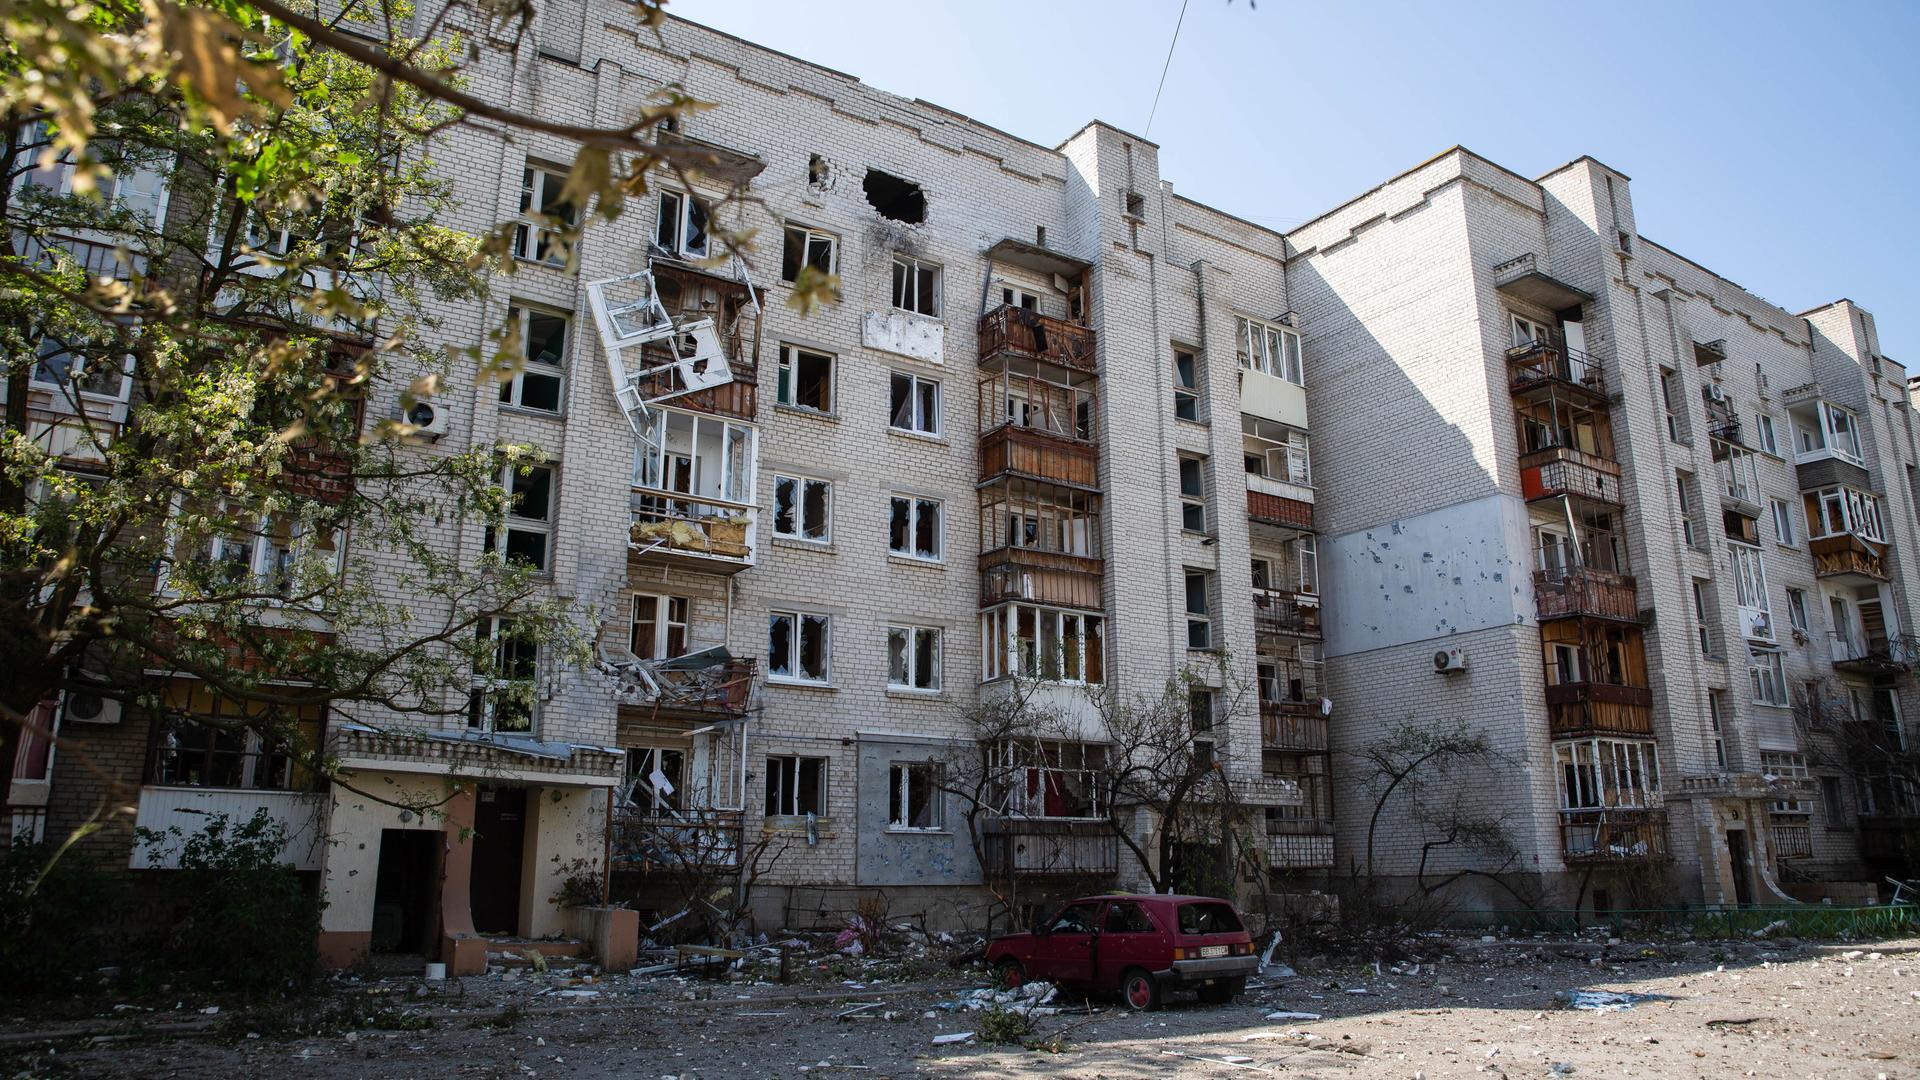 DIESES FOTO WIRD VON DER RUSSISCHEN STAATSAGENTUR TASS ZUR VERFÜGUNG GESTELLT: Ein Blick auf ein durch Beschuss beschädigtes Wohnhaus in der umkämpften Stadt Sjewjerodonezk in der Region Luhansk, Ukraine.